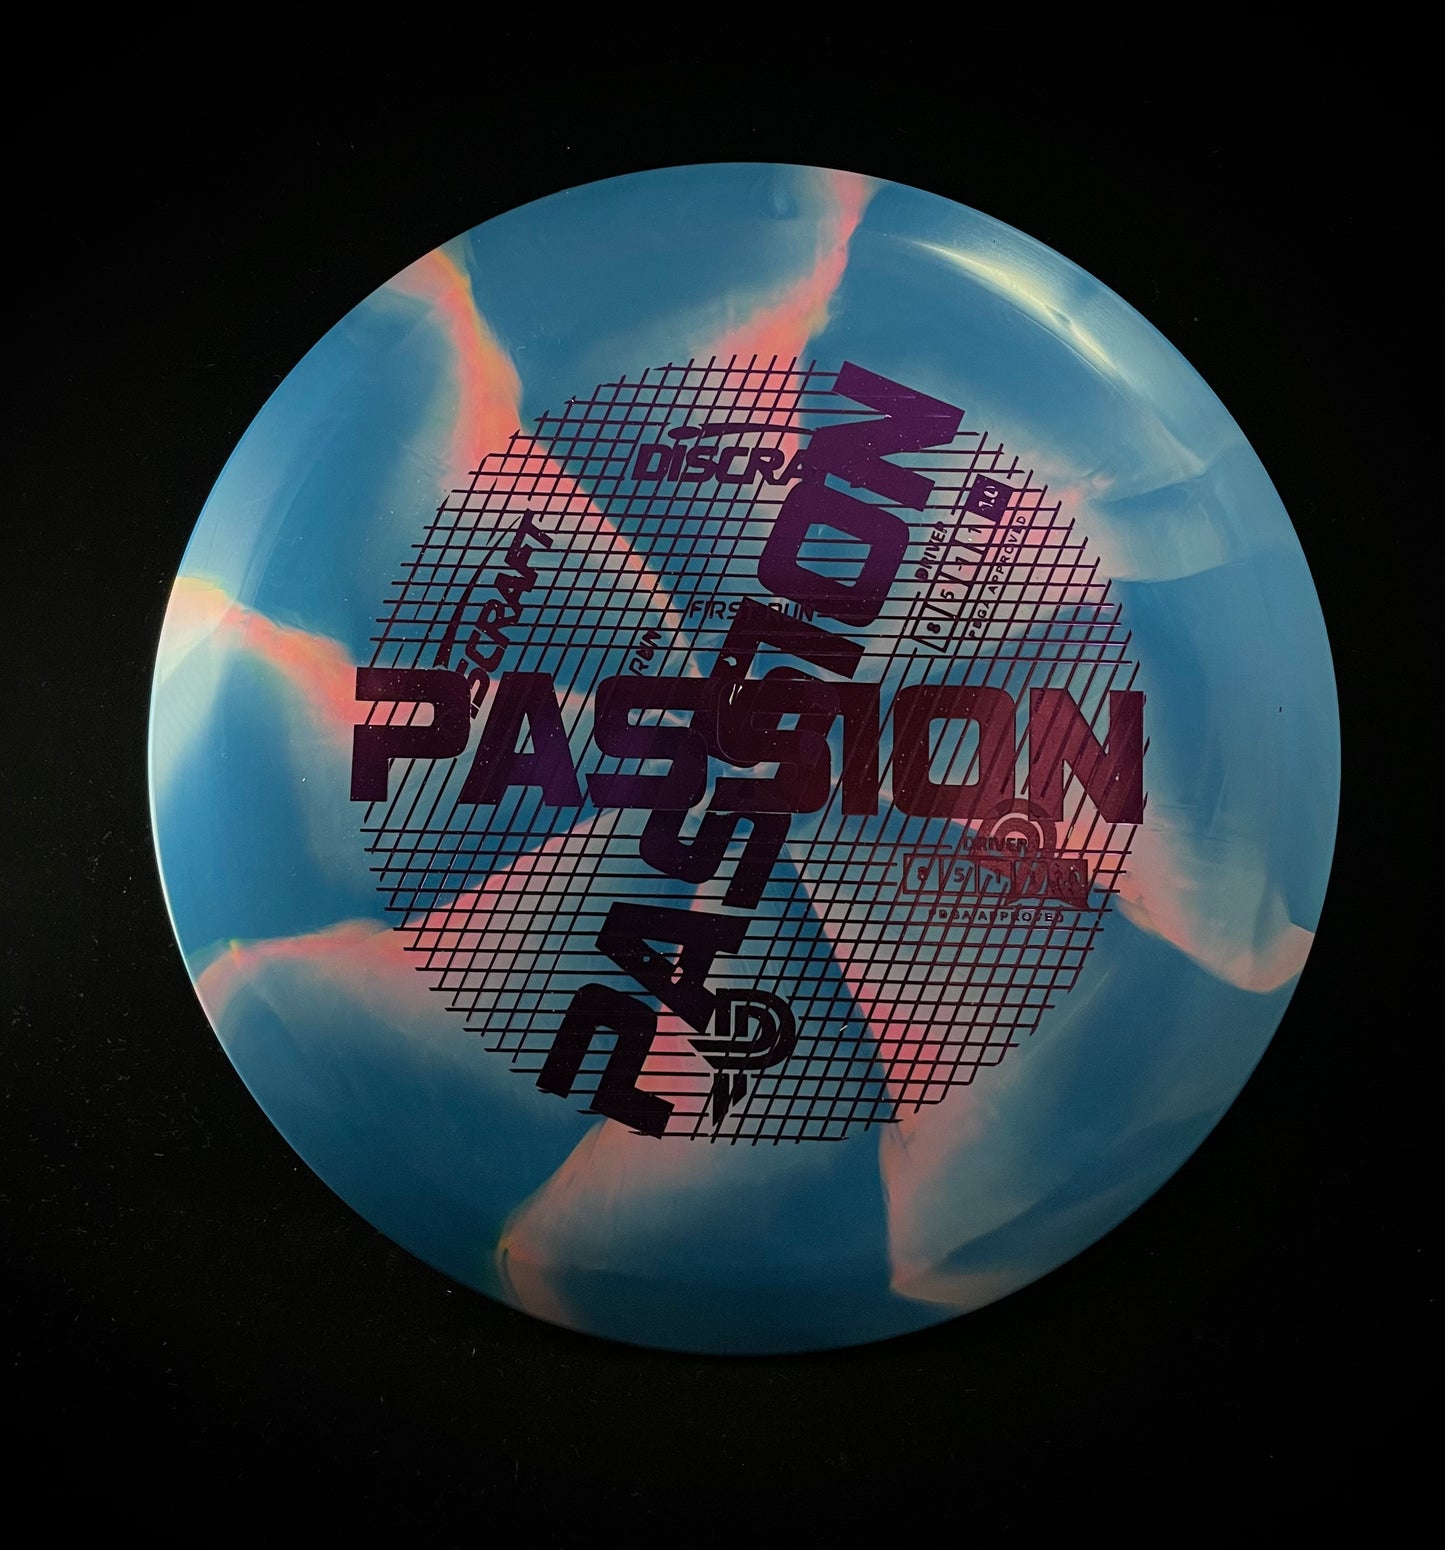 ESP Passion - Paige Pierce